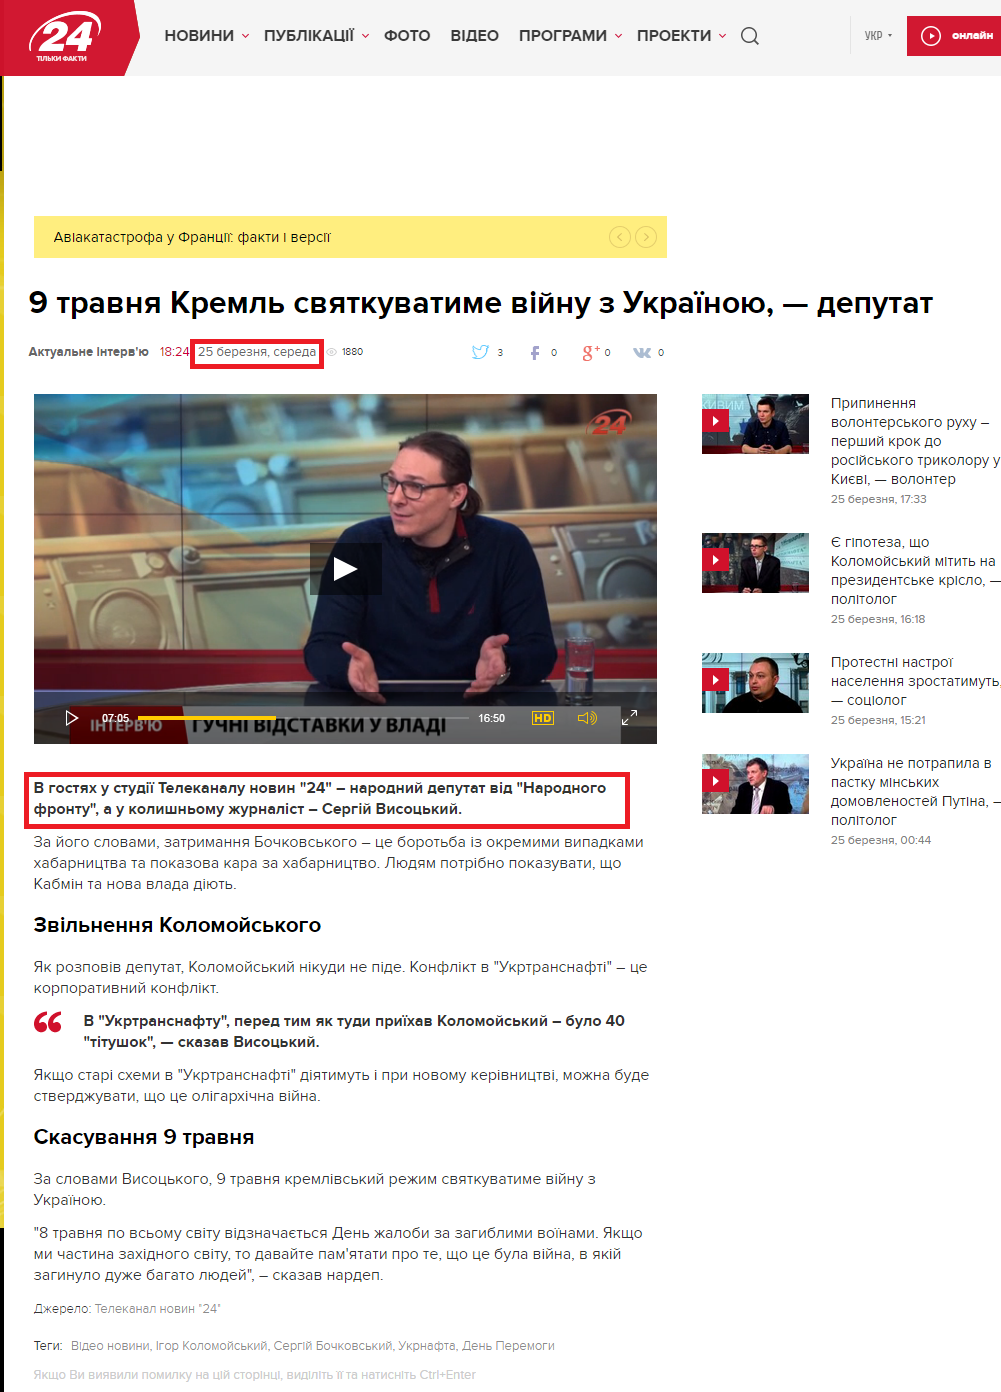 http://24tv.ua/news/showNews.do?9_travnya_kreml_svyatkuvatime_viynu_z_ukrayinoyu__deputat&objectId=558289